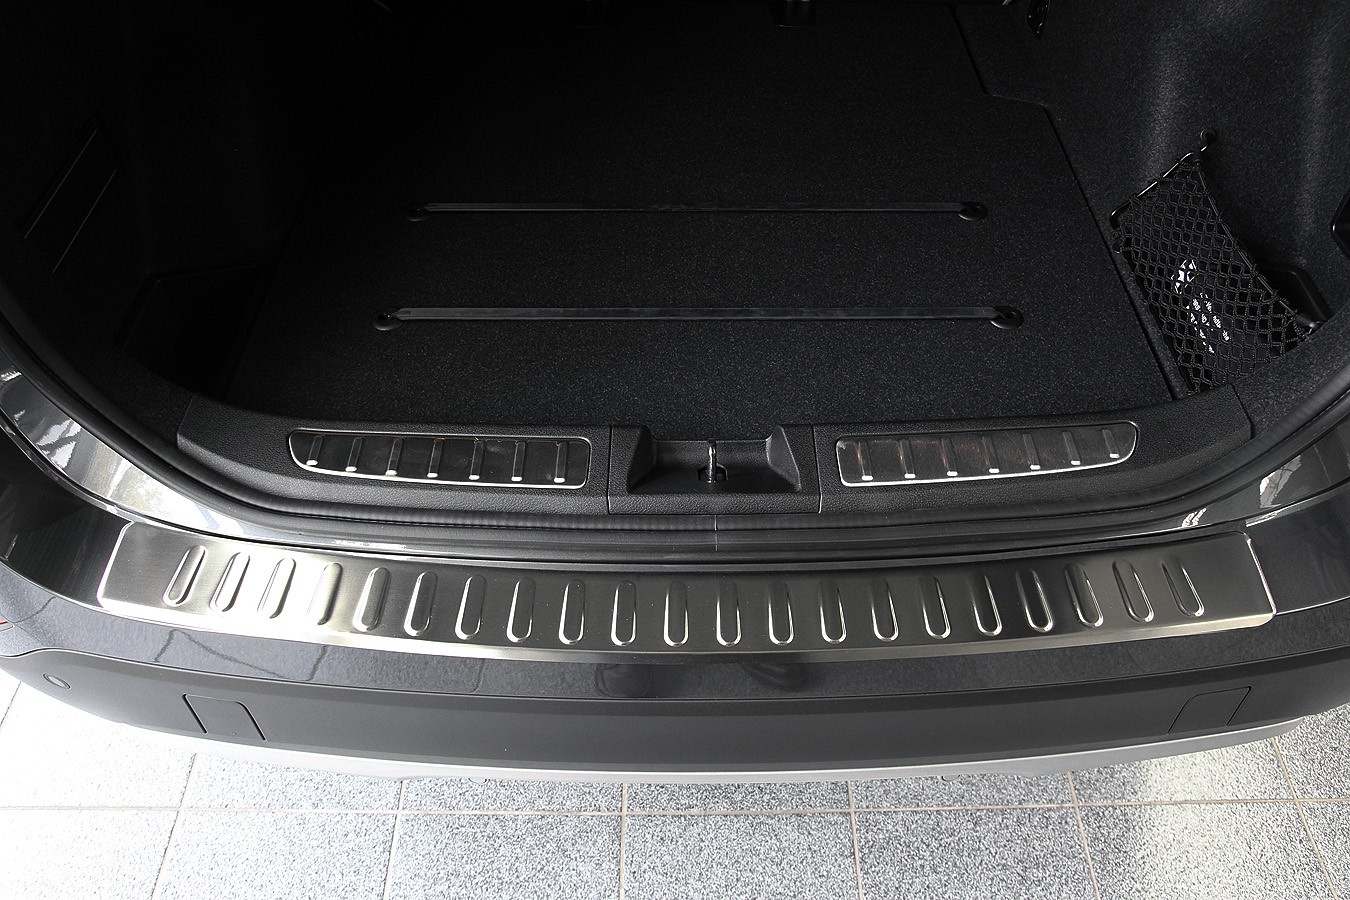 Ladekantenschutz Edelstahl MATT kompatibel für BMW X1 E84 2009-2012 vor LCI, mit Abkantung